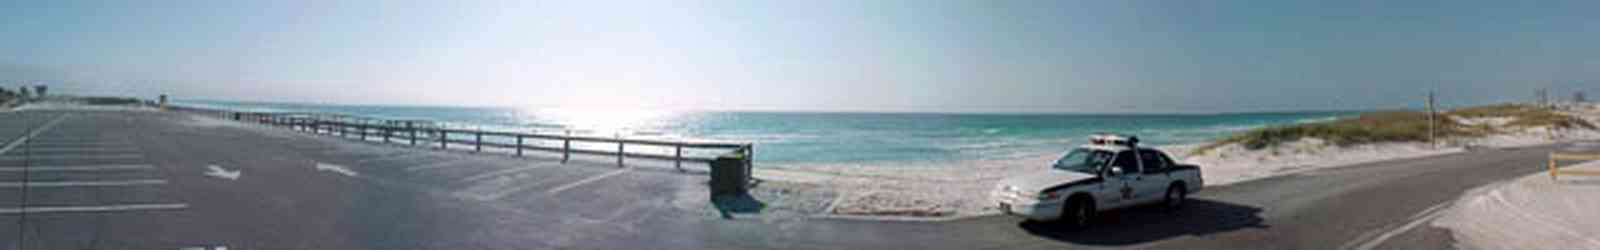 Pensacola-Beach:-East-Park_02.jpg:  gulf of mexico, east park, dune, sand, beach, sheriff's car